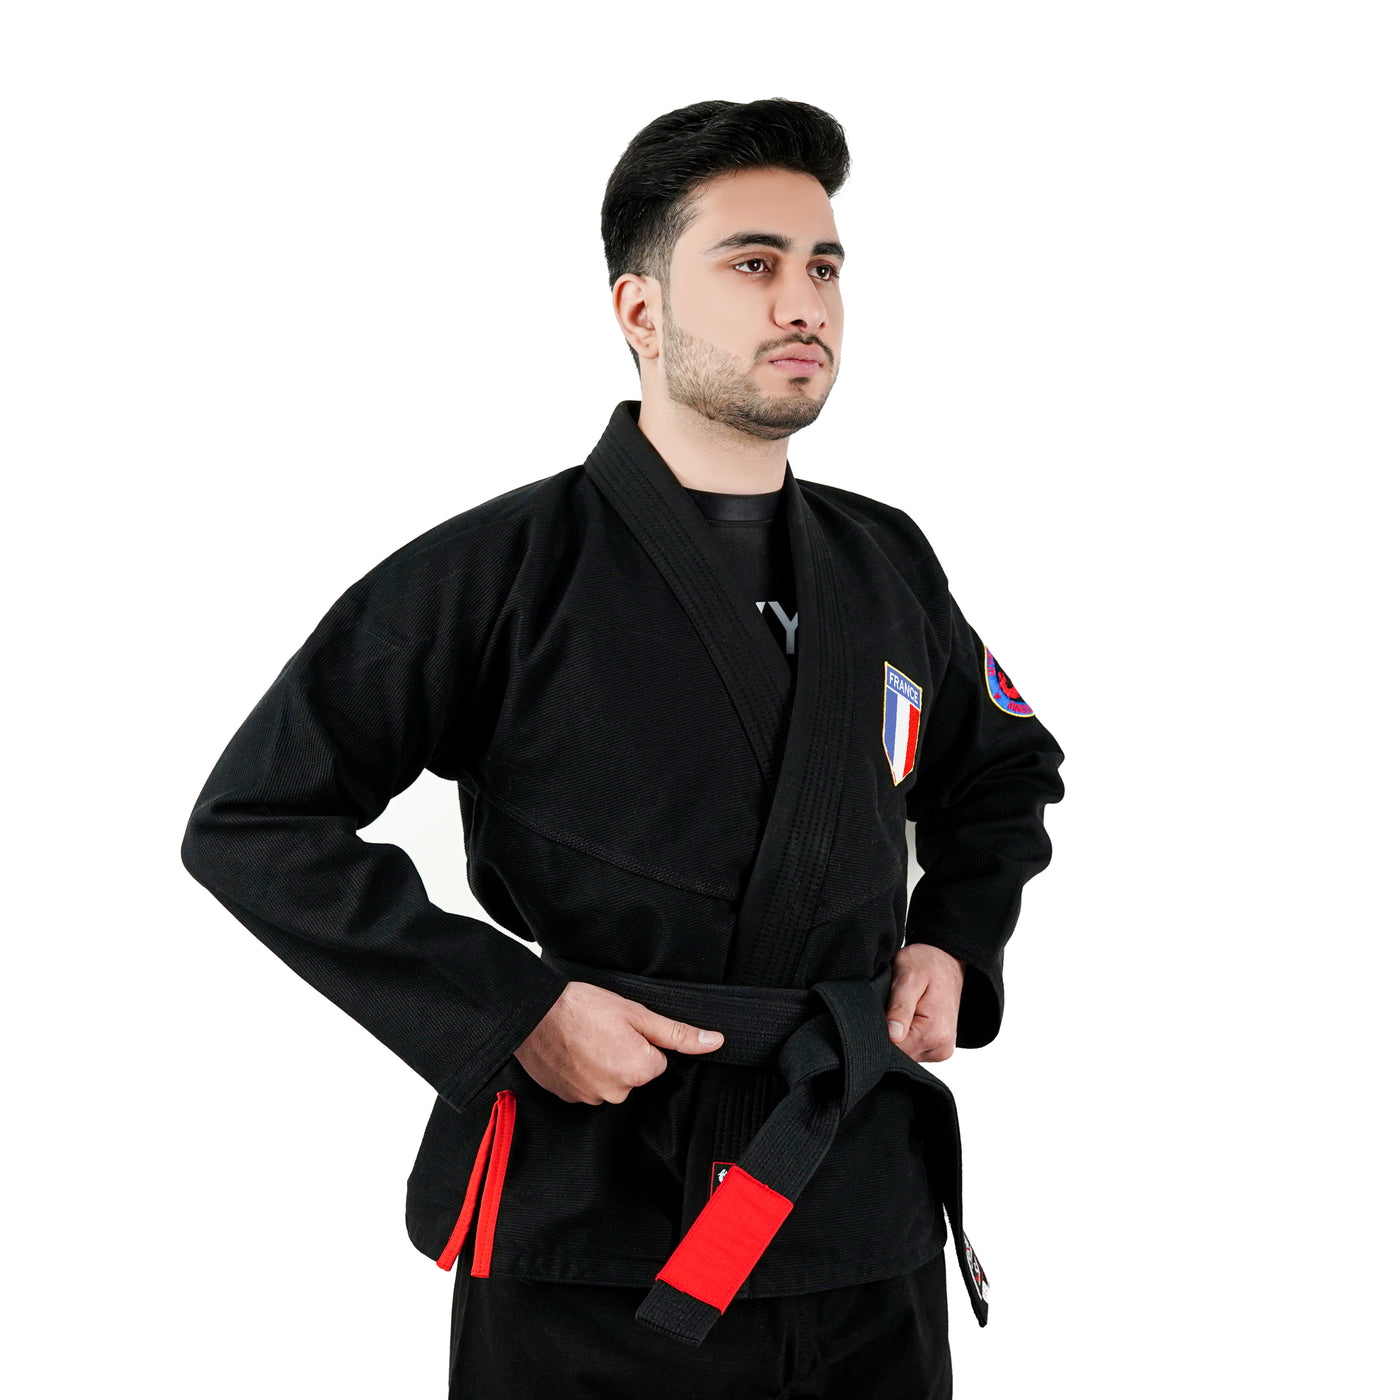 French Black Brazilian Jiu Jitsu Gi With Built-in Rash Guard